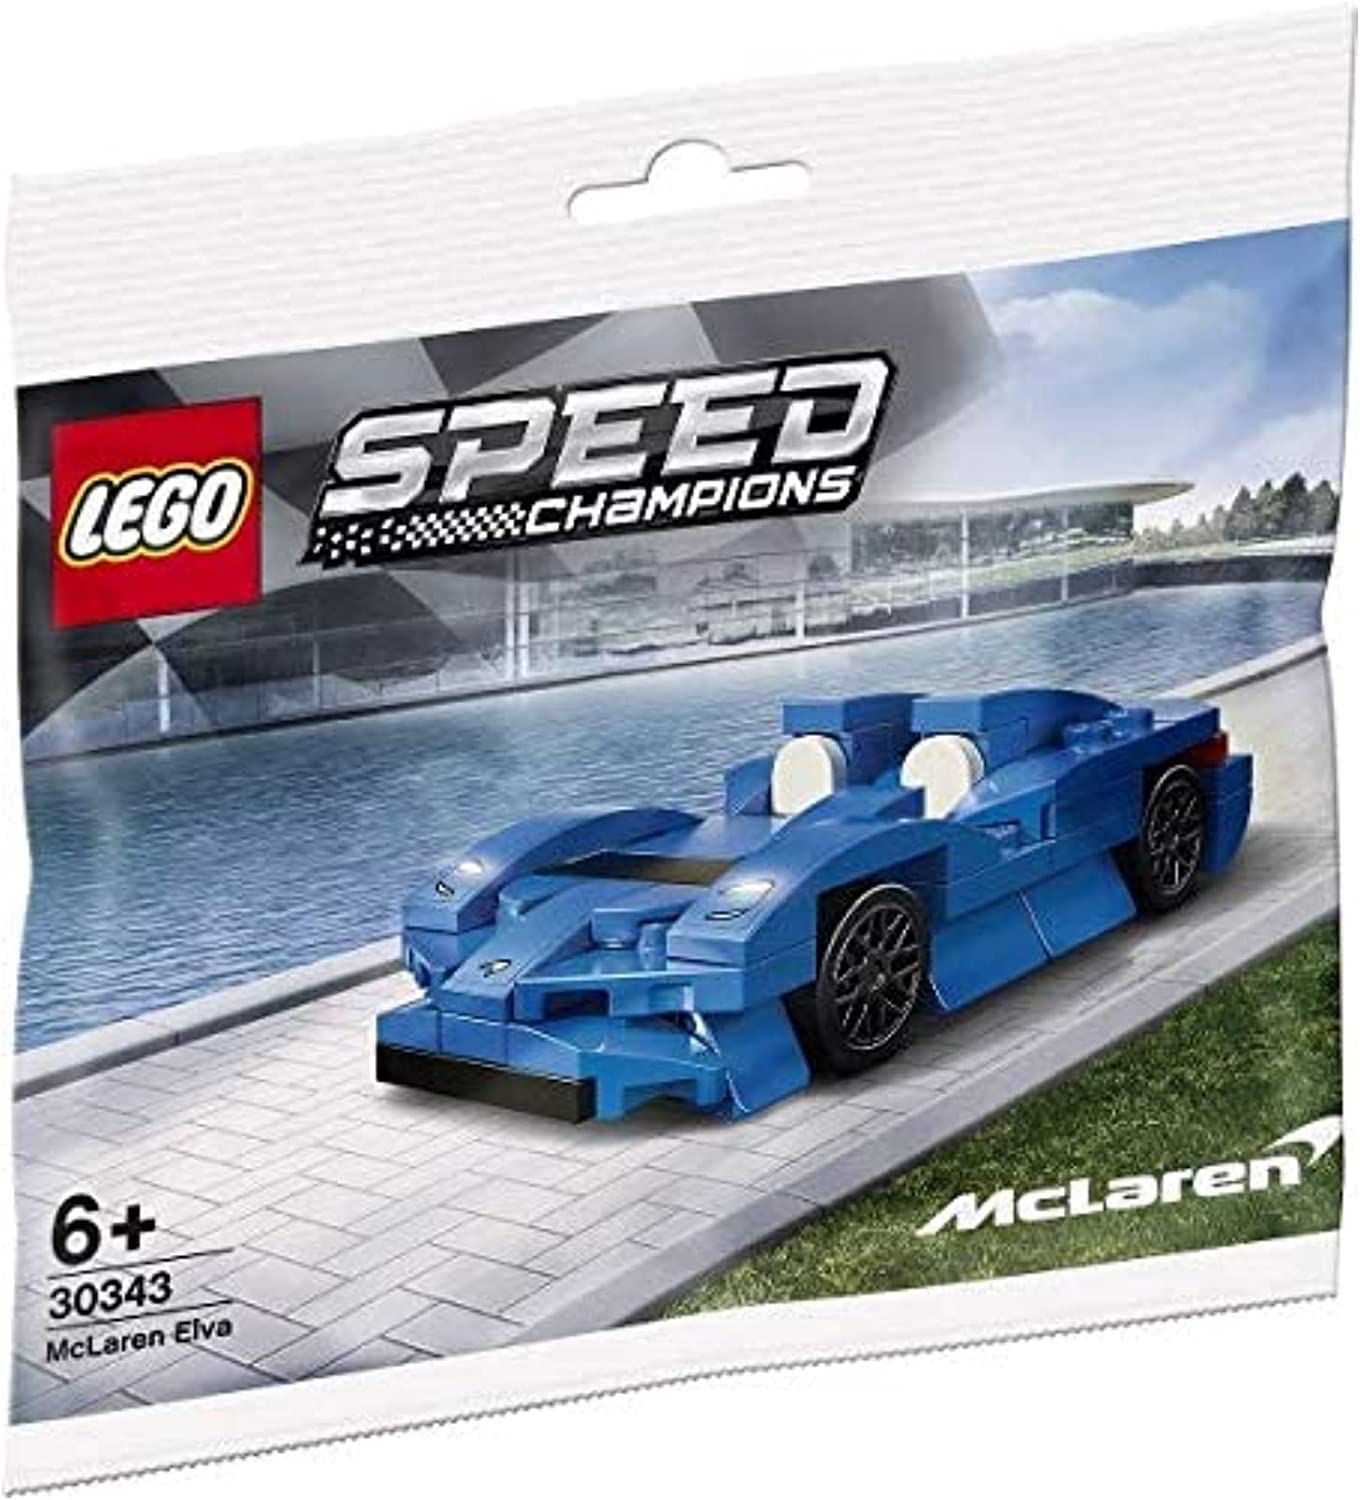 LEGO 30343 Speed Champions, McLaren Elva